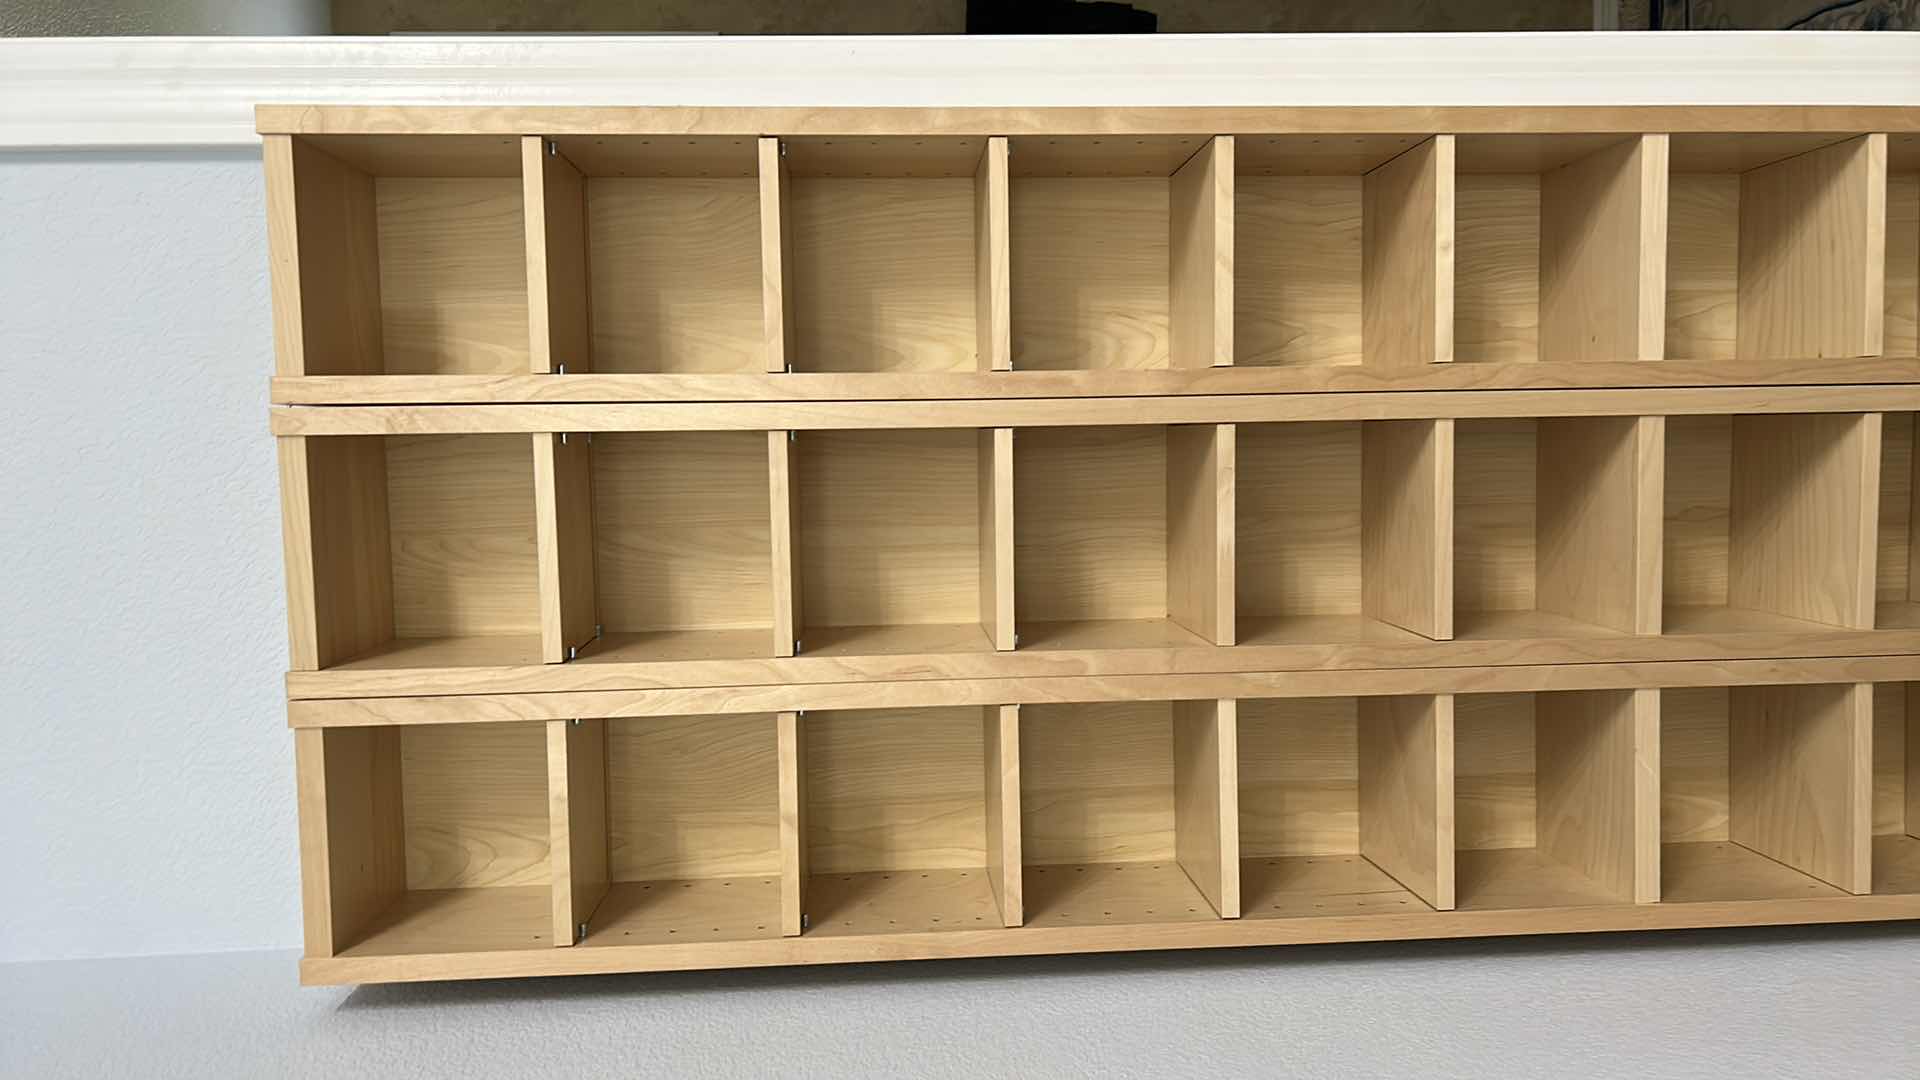 Photo 2 of 3 IKEA THIN SHELVING UNITS  8” x 7” x 80” each